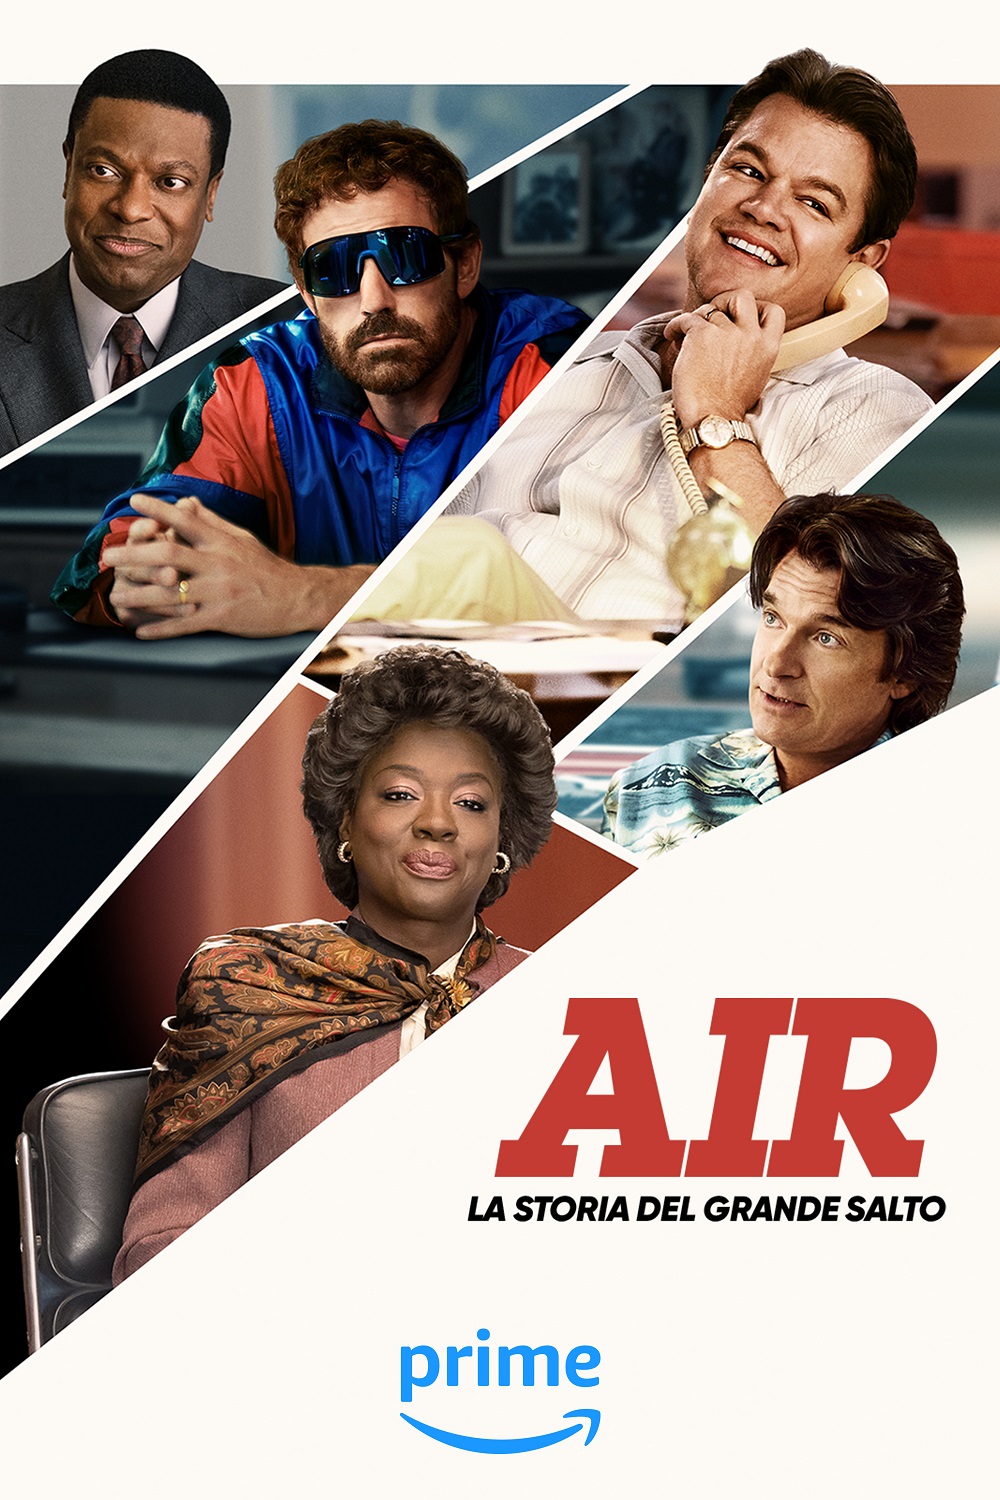 air prime video poster